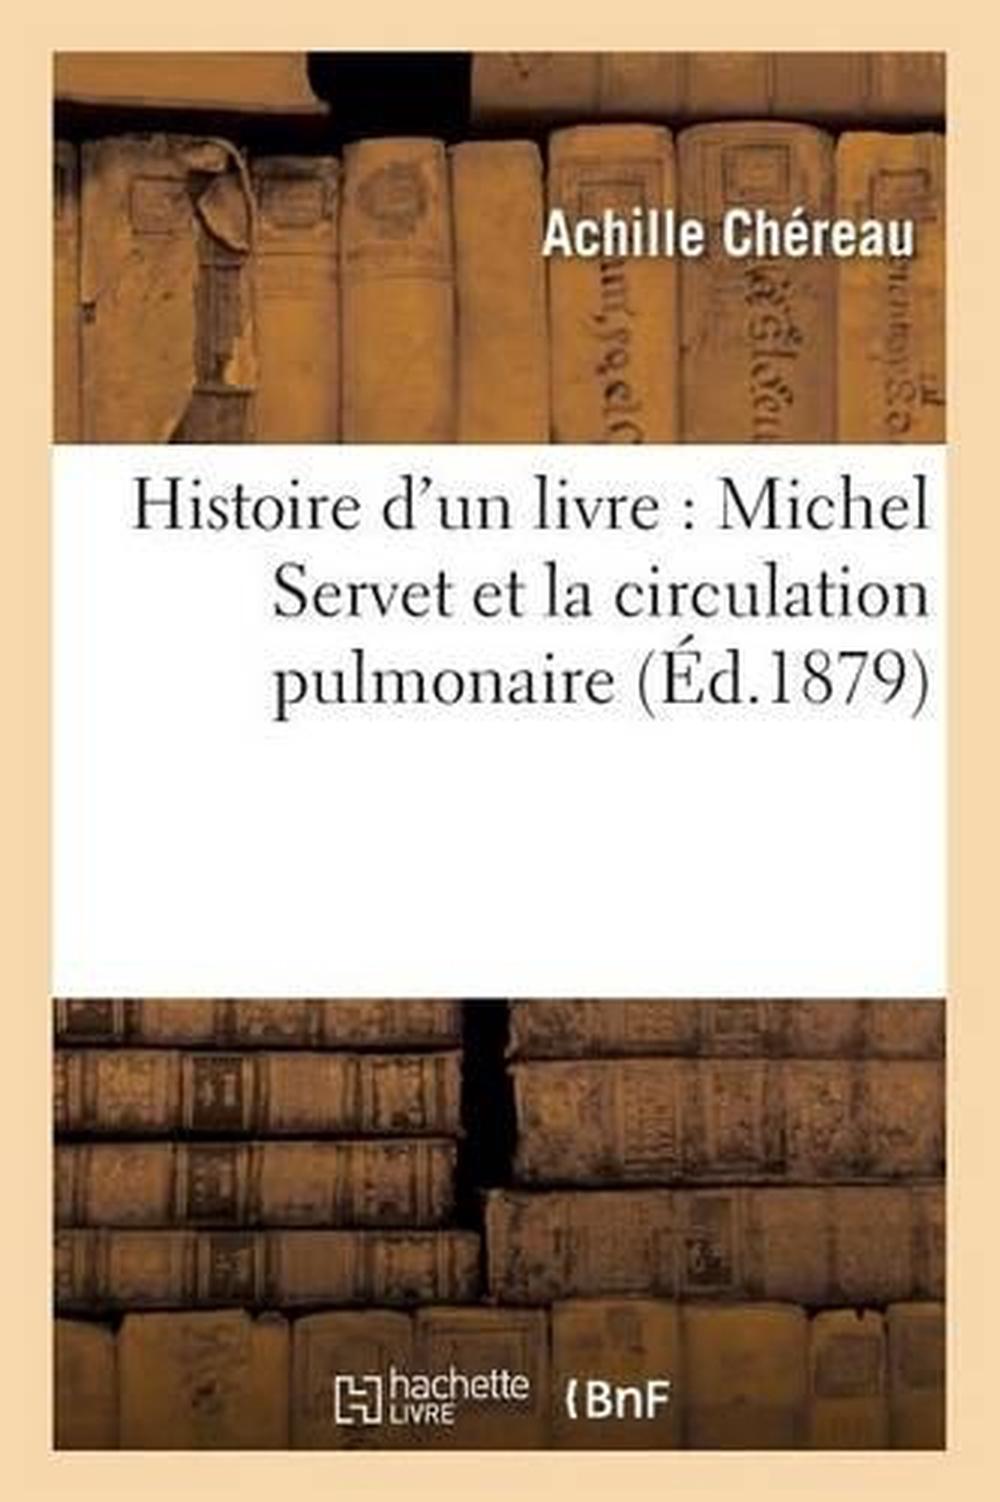 Histoire d'un livre Michel Servet et la circulation pulmonaire by